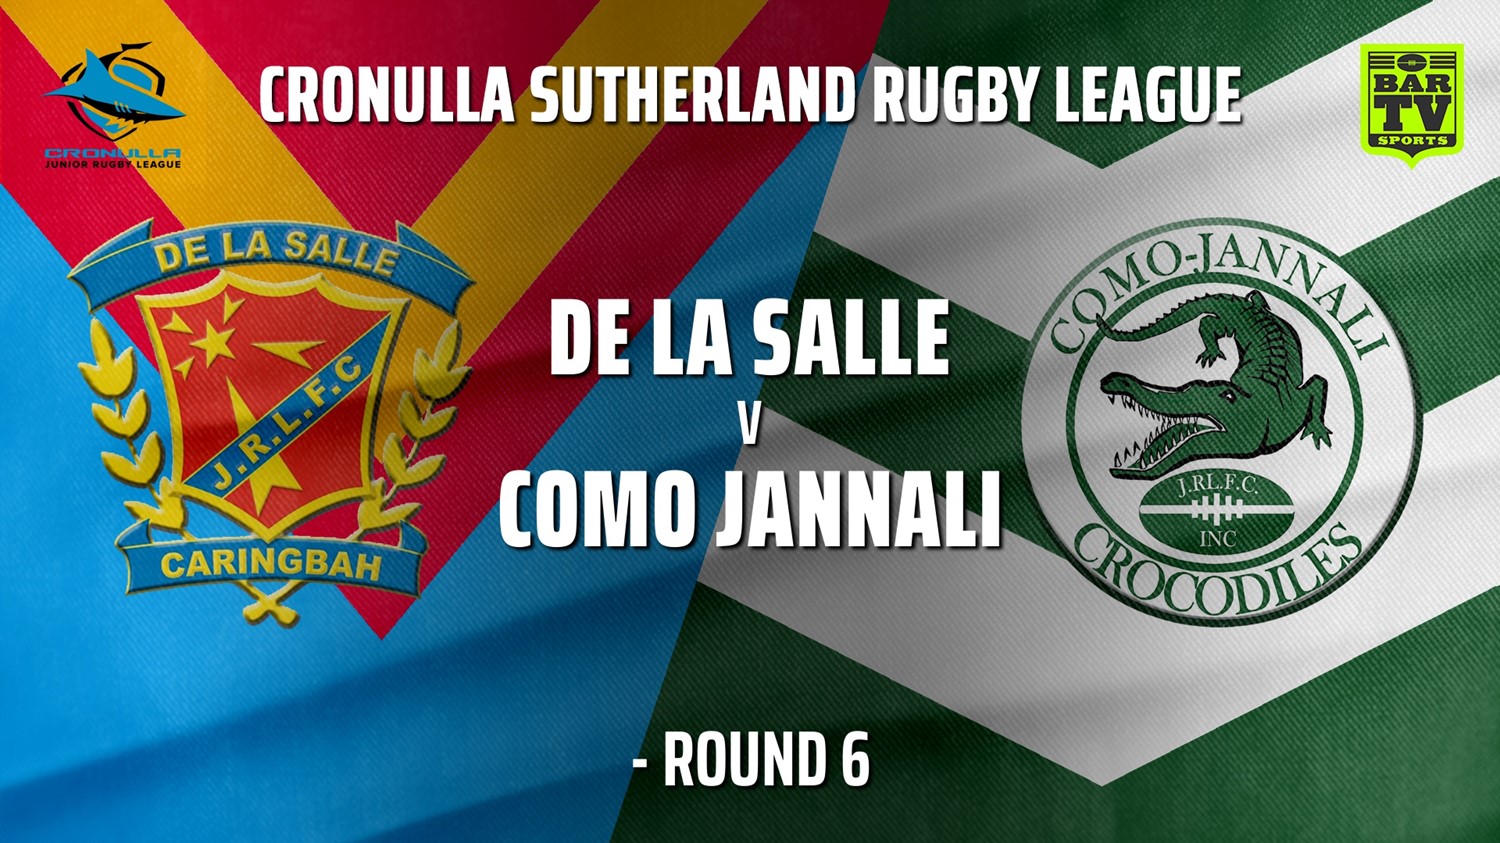 210605-Cronulla JRL - Under 11 Gold Round 6 - De La Salle v Como Jannali Crocodiles Minigame Slate Image